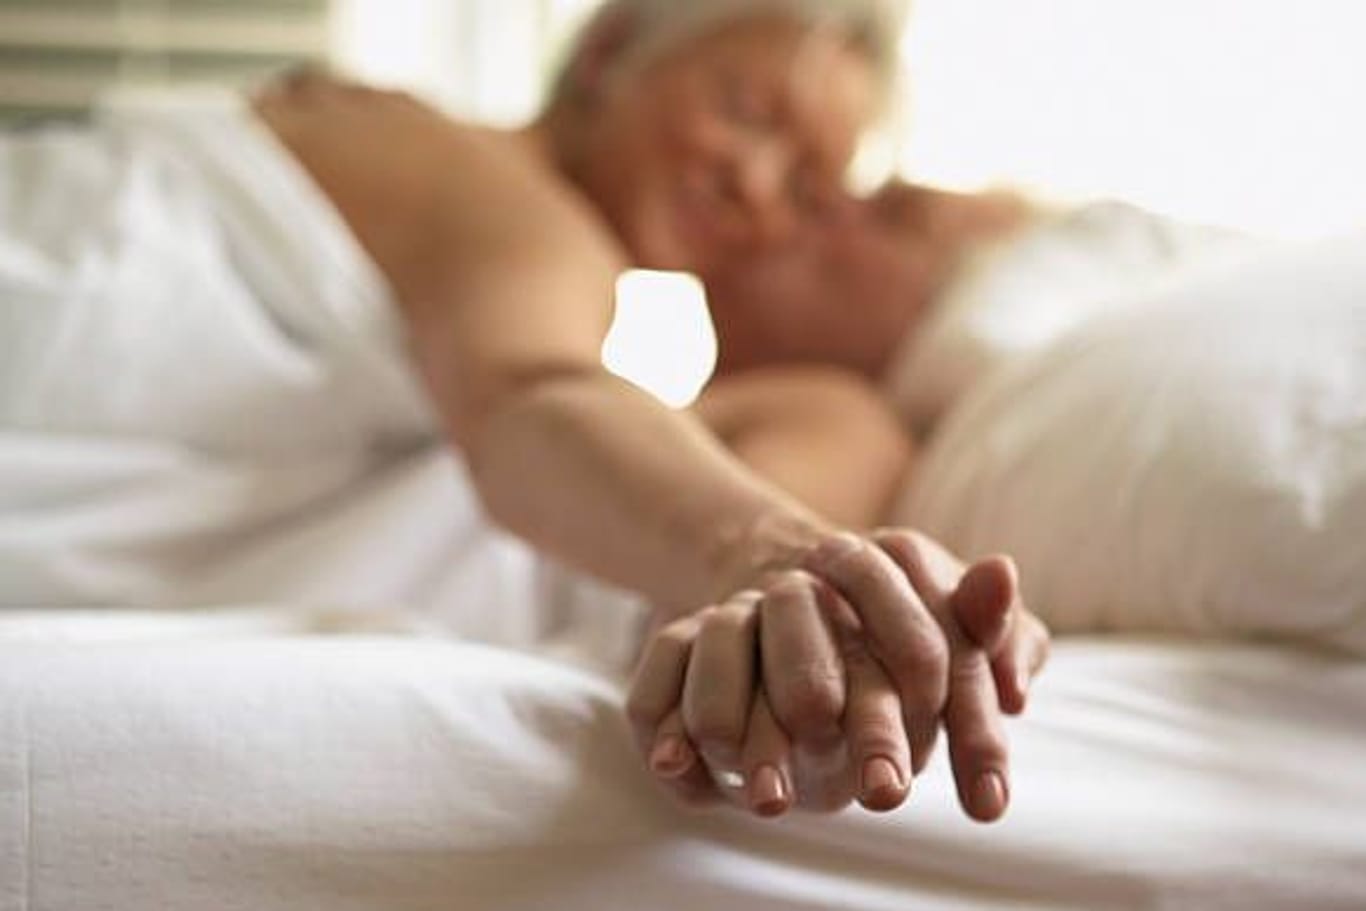 Auch ältere Menschen erkranken: Geschlechtskrankheiten kommen häufig vor – so häufig, dass viele im Laufe ihres Lebens mindestens einmal davon betroffen sind.